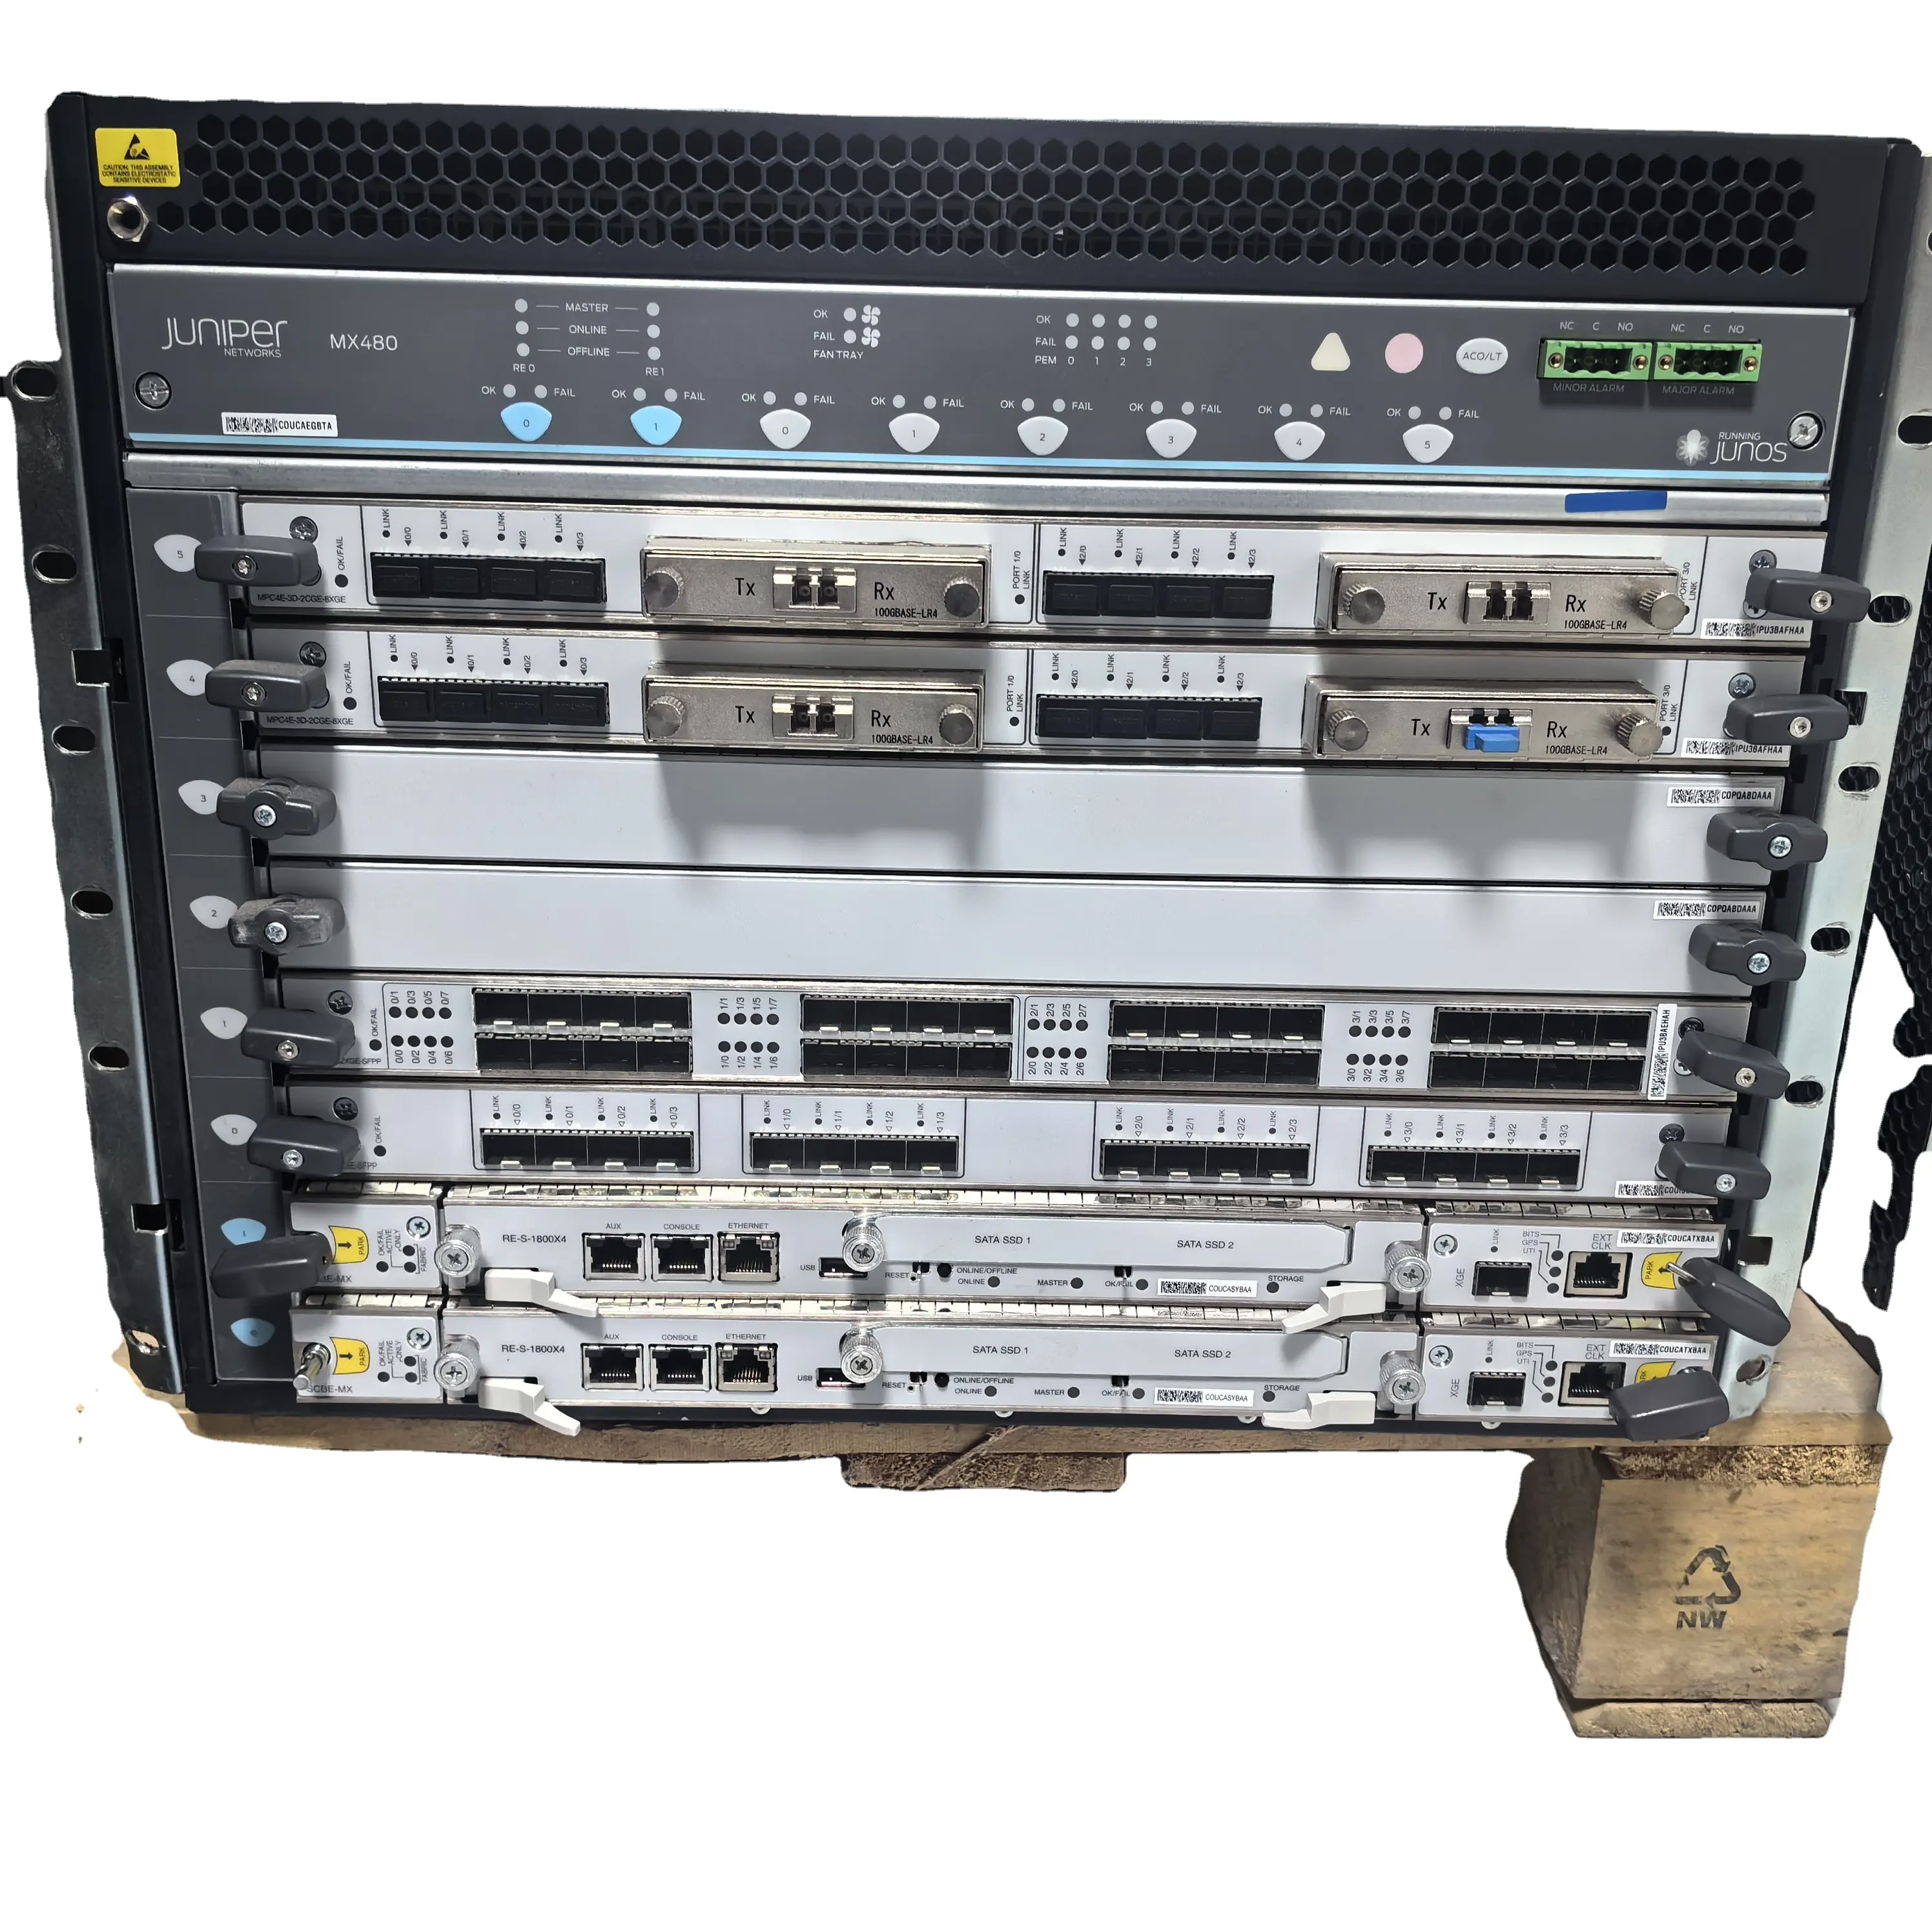 प्रयुक्त जुनिपर नेटवर्क राउटर्स MX480BASE-AC में 4 बिजली आपूर्ति और 2 पंखे शामिल हैं, बिजनेस कार्ड शामिल नहीं हैं